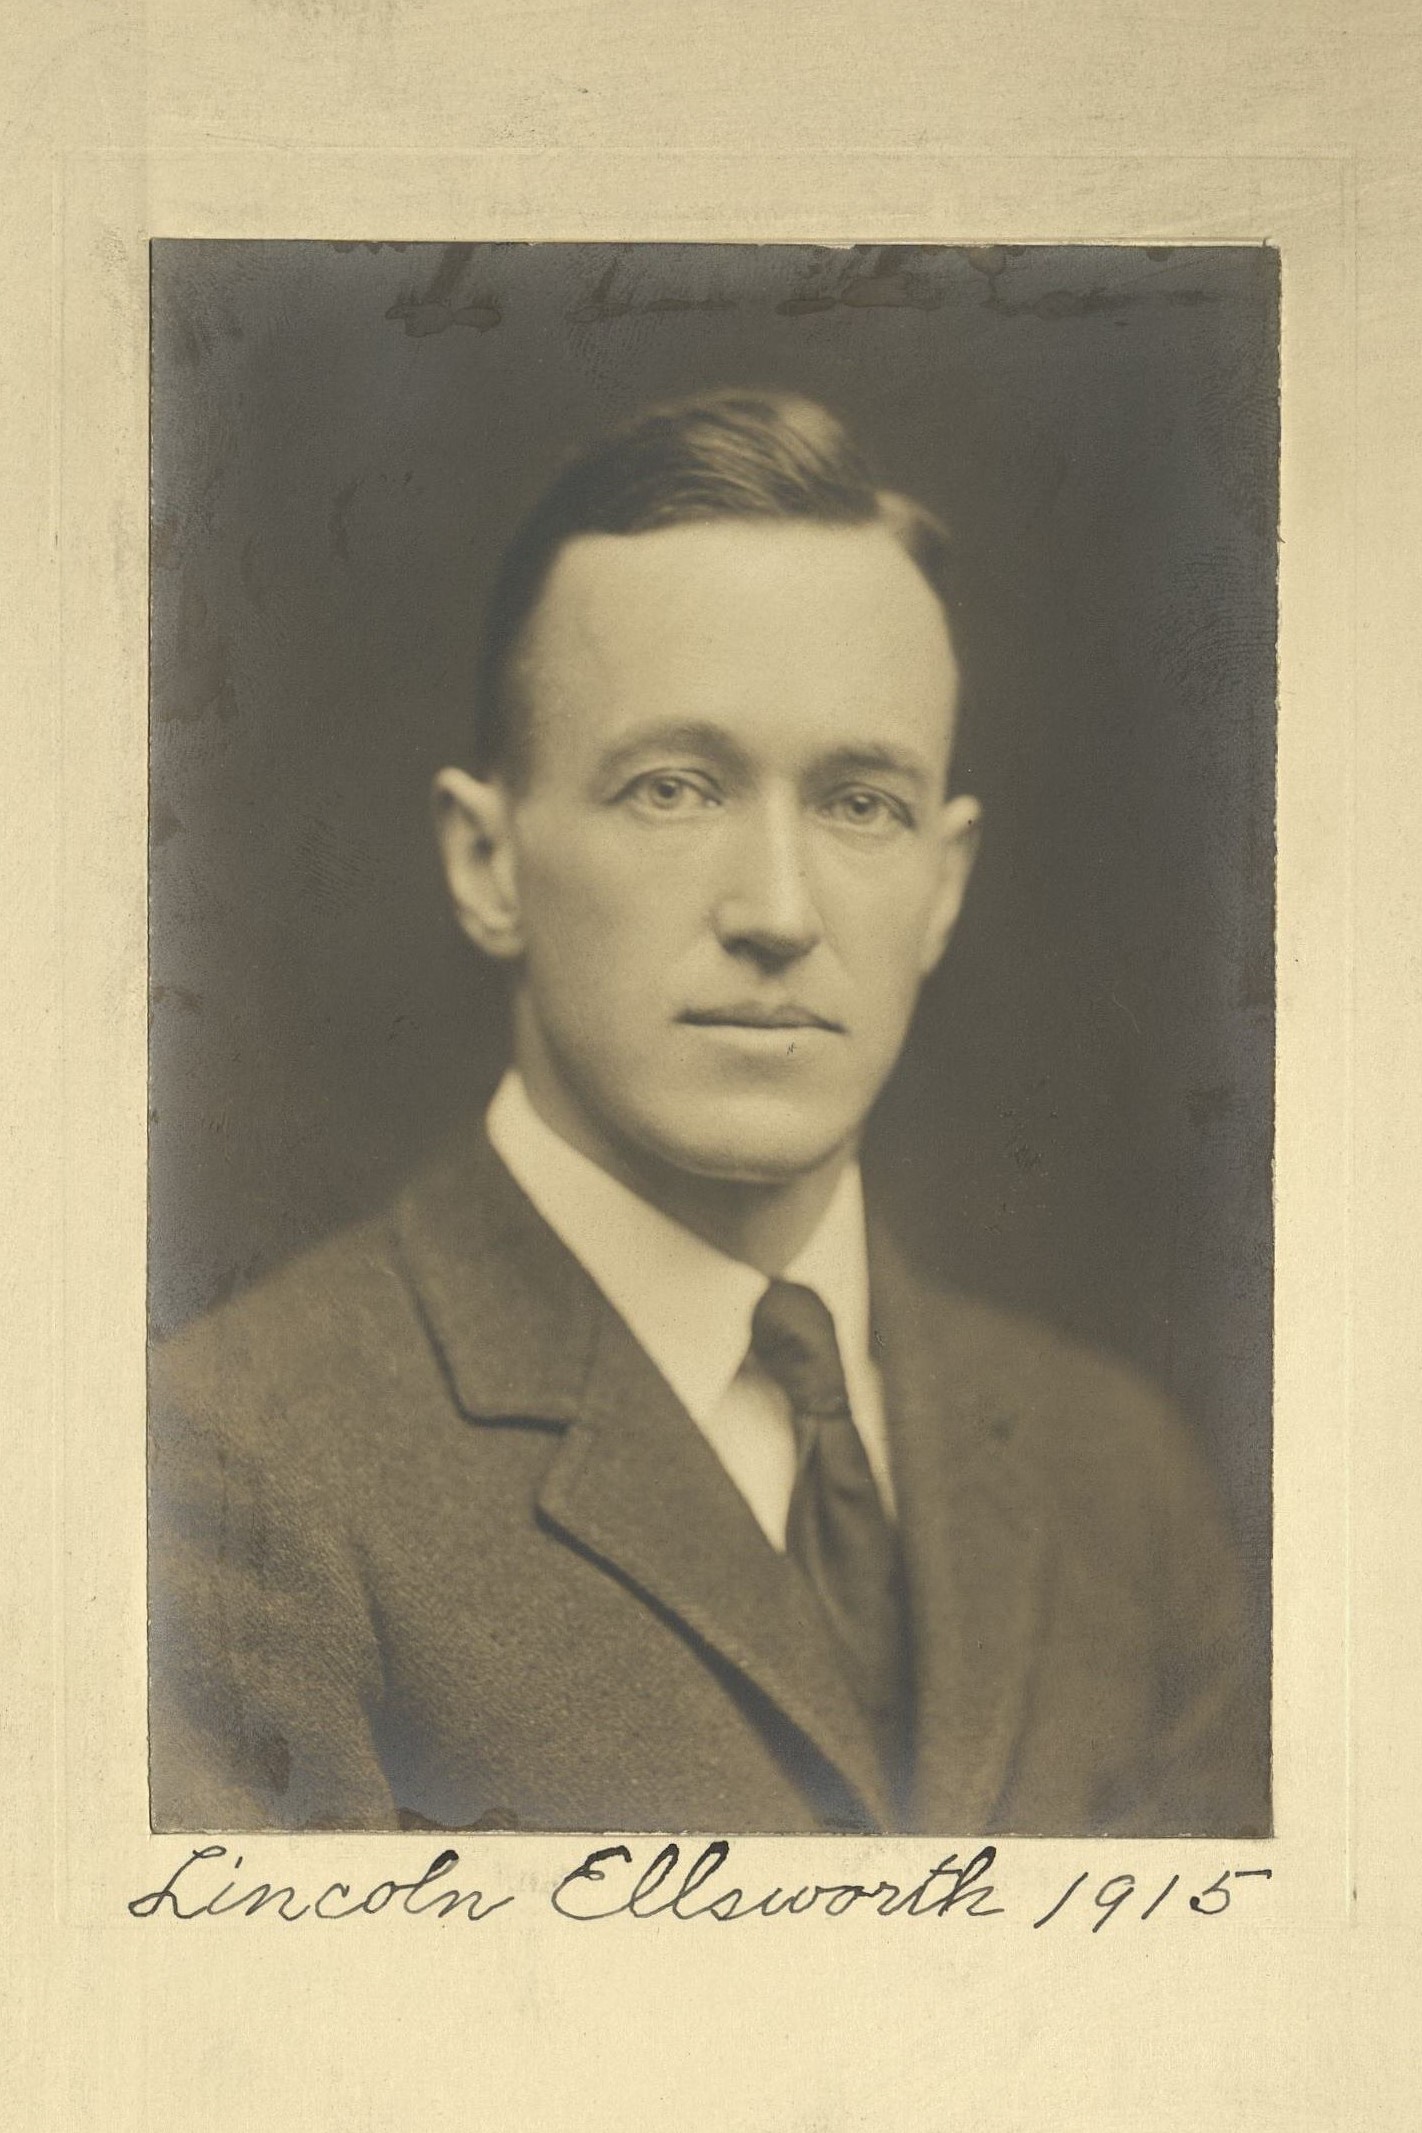 Member portrait of Lincoln Ellsworth